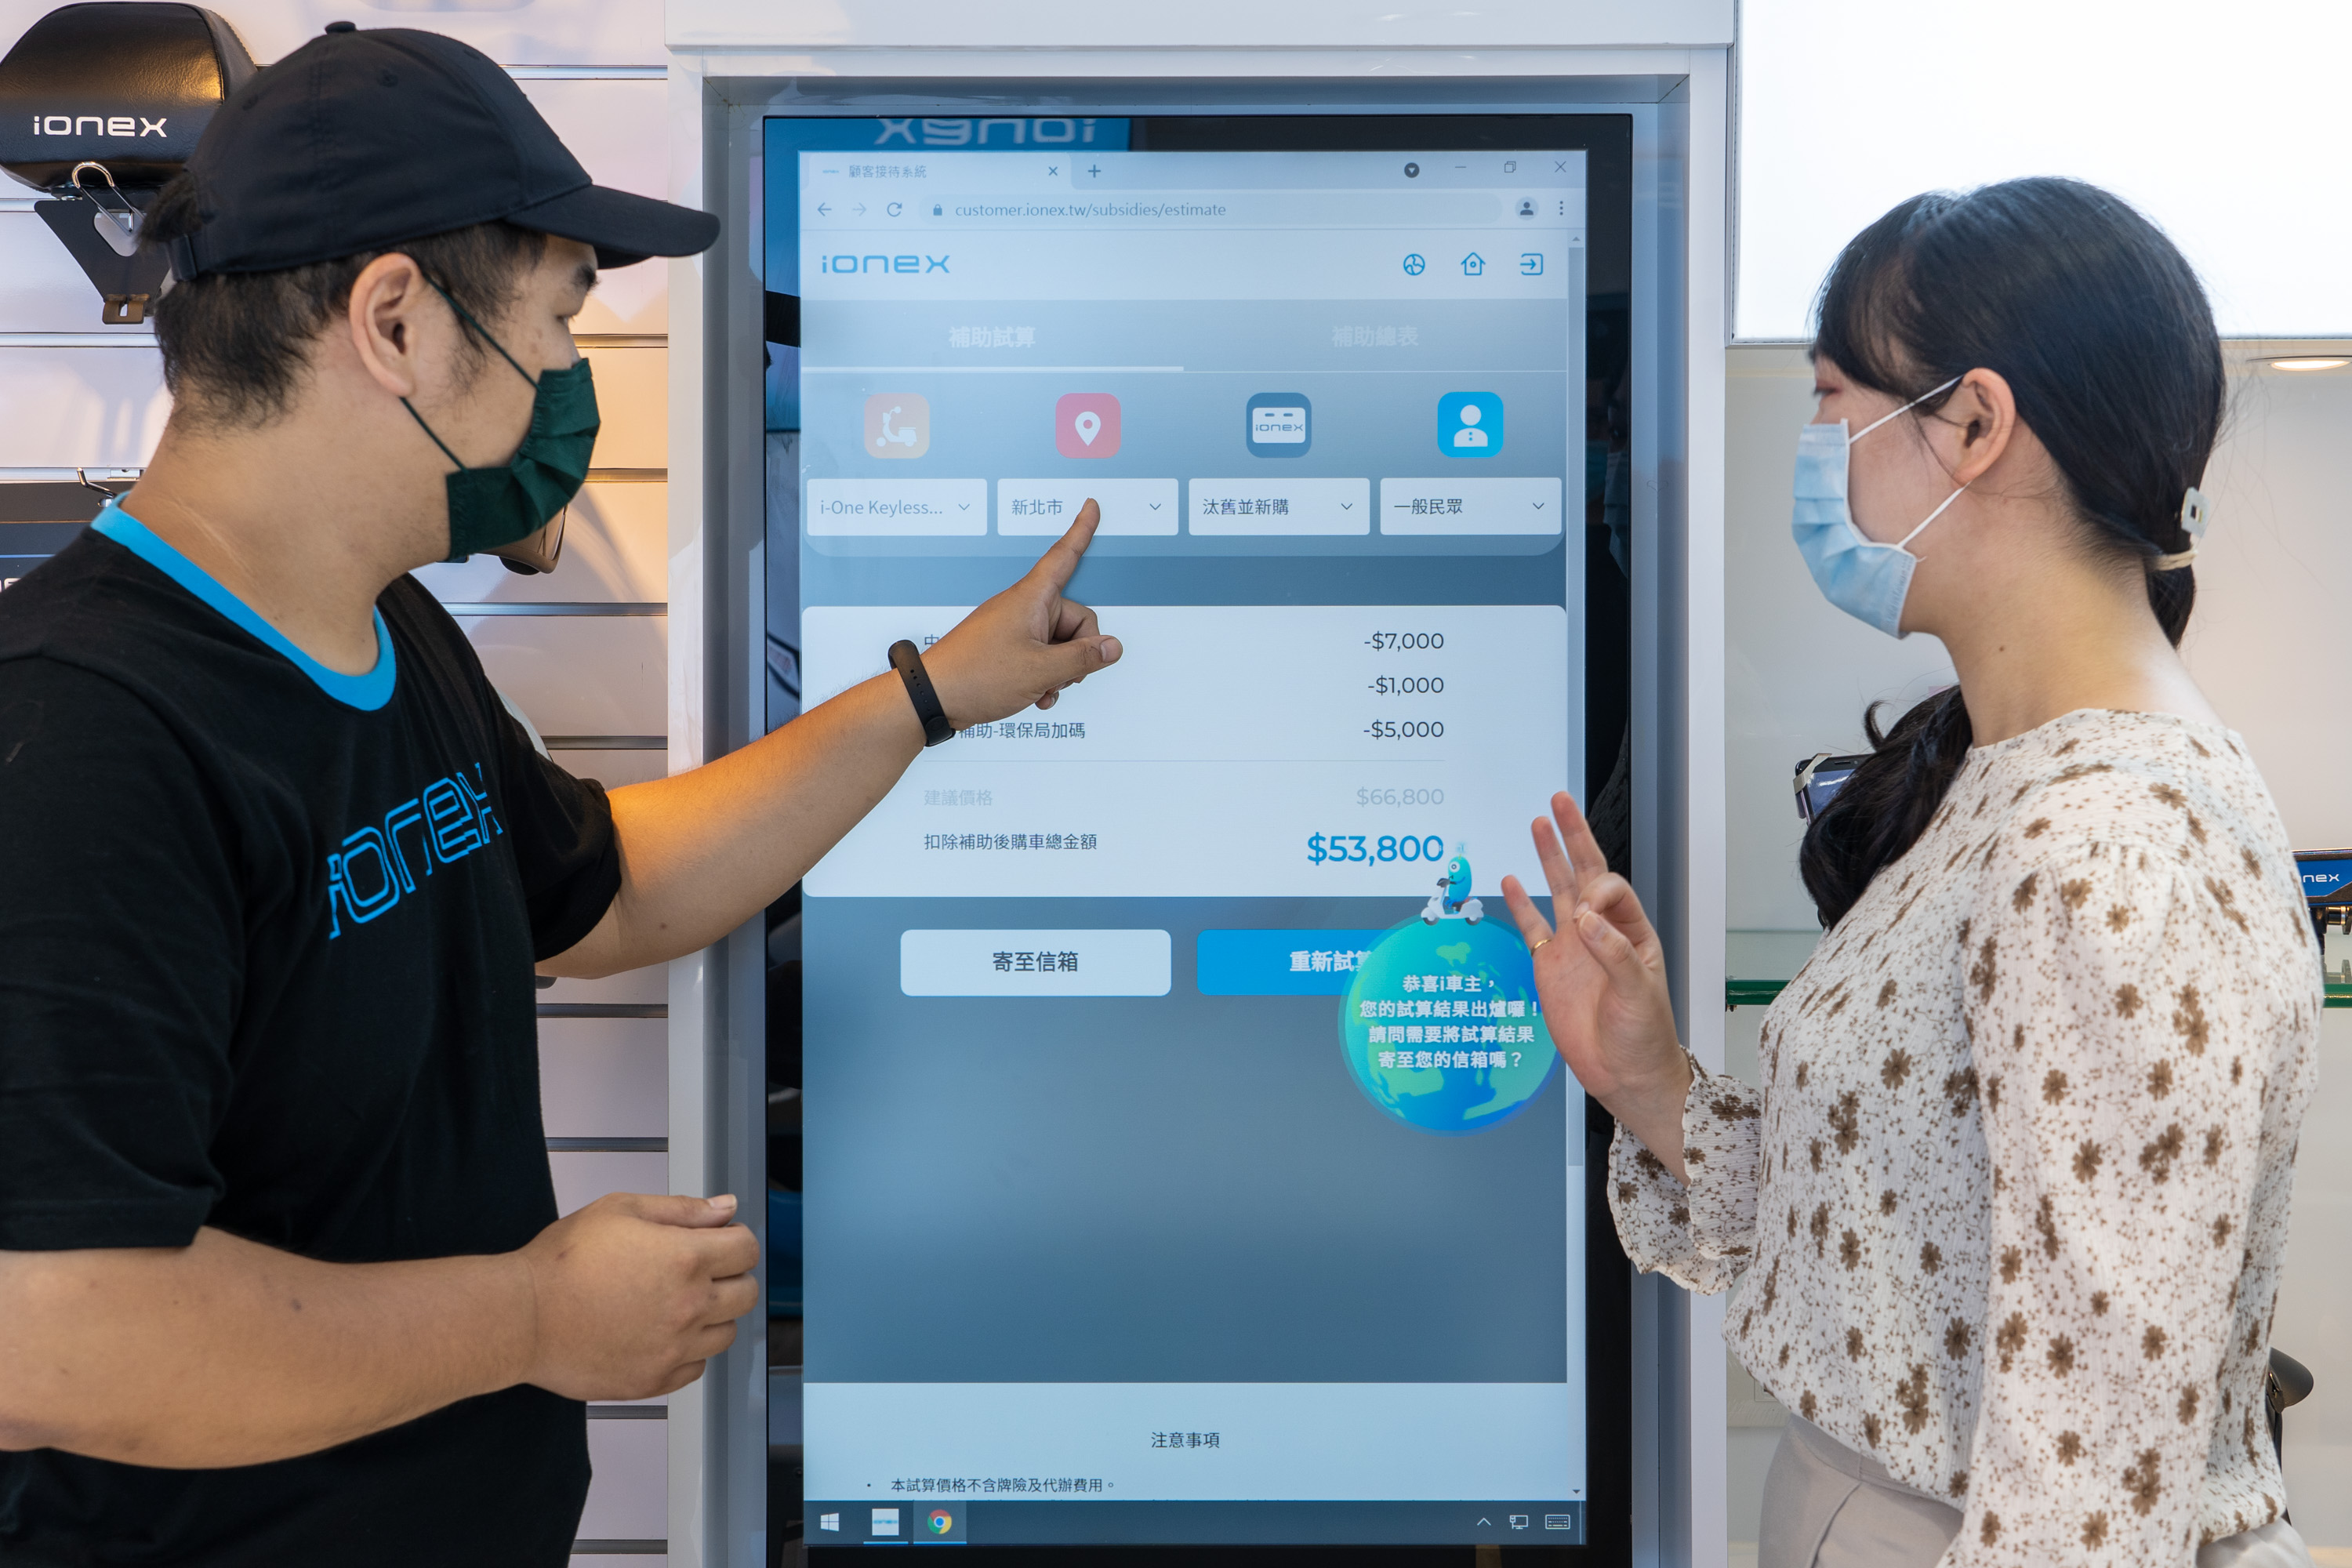 互動螢幕可以提供民眾自行操作了解 Ionex 3.0 車輛資訊、據點查詢，也便於業者向民眾解說。